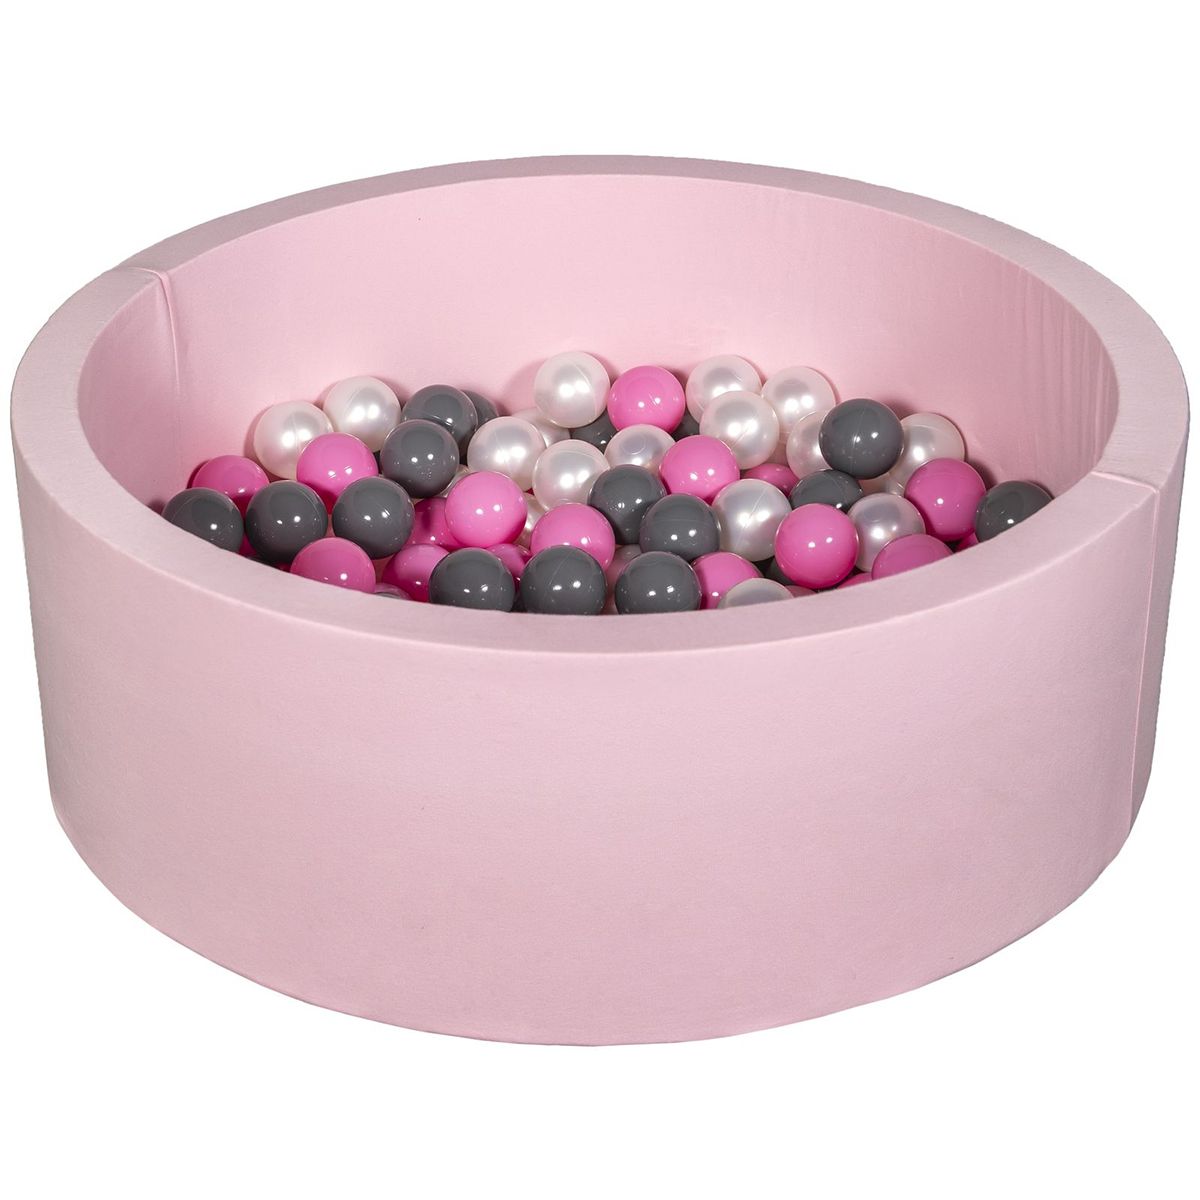  Piscine à balles Aire de jeu + 150 balles rose perle, rose clair, gris